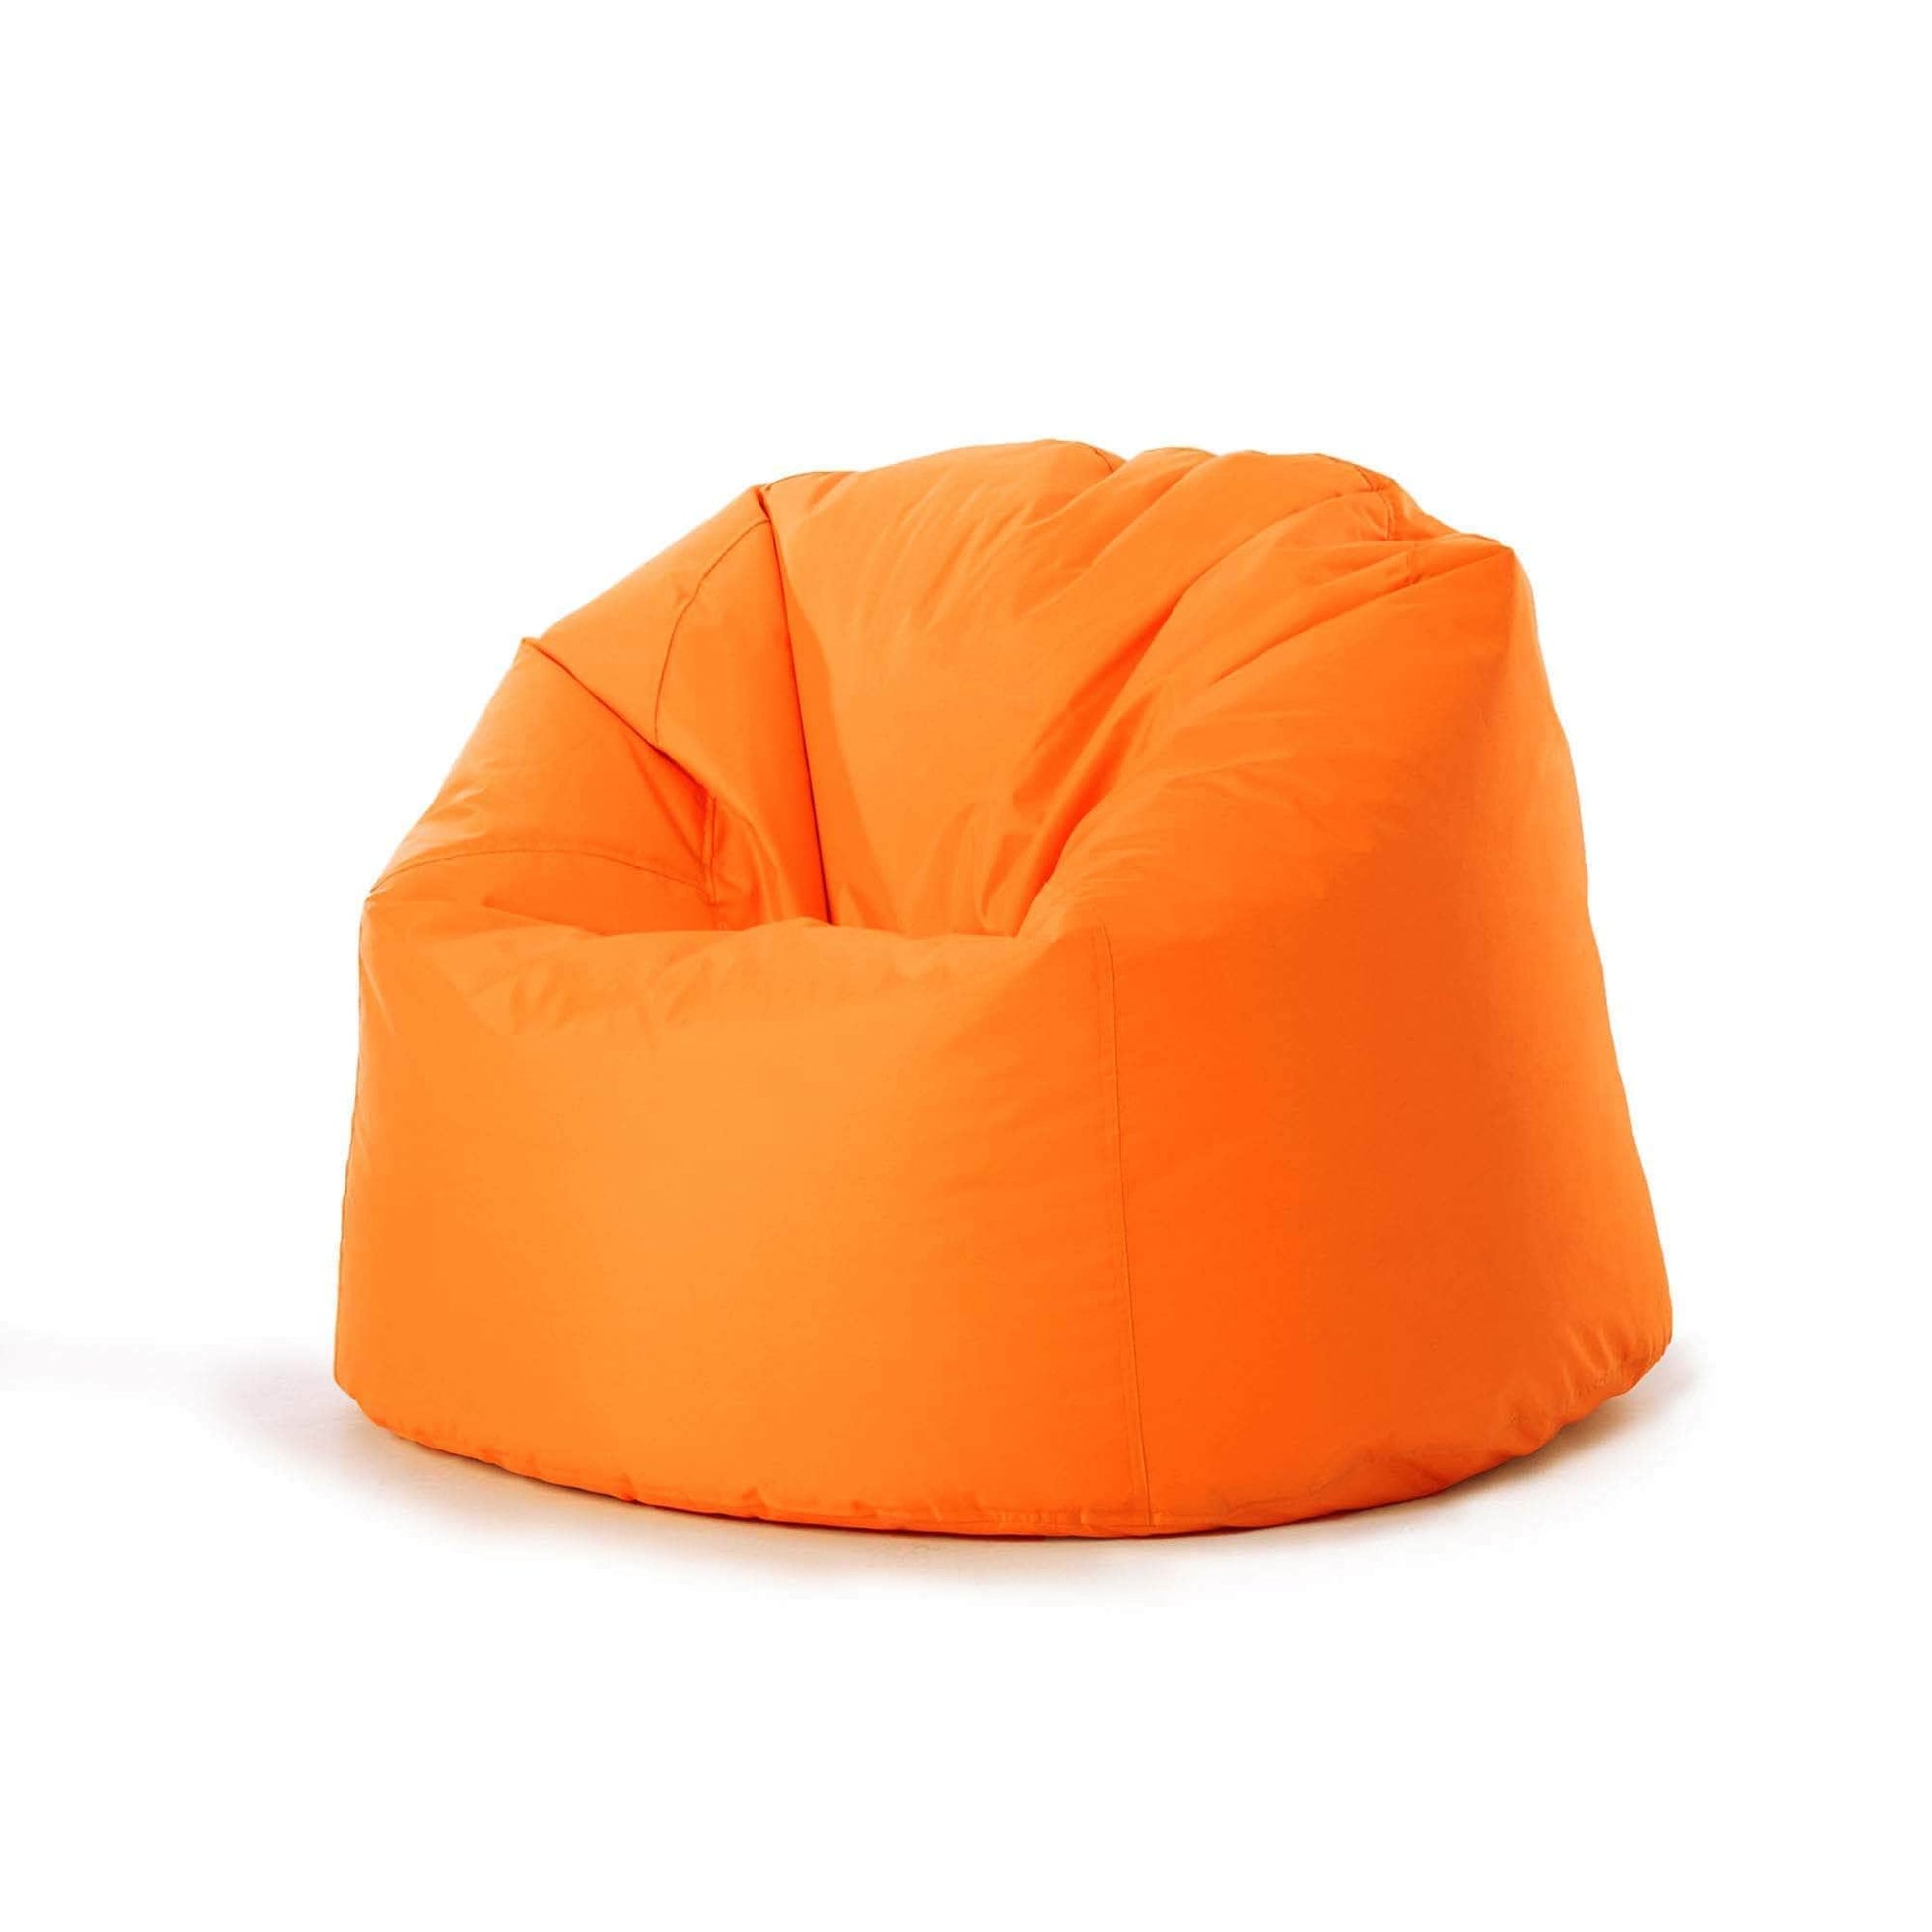 Penguin Group Waterproof Bean Bags Orange Chair Waterproof Bean bag